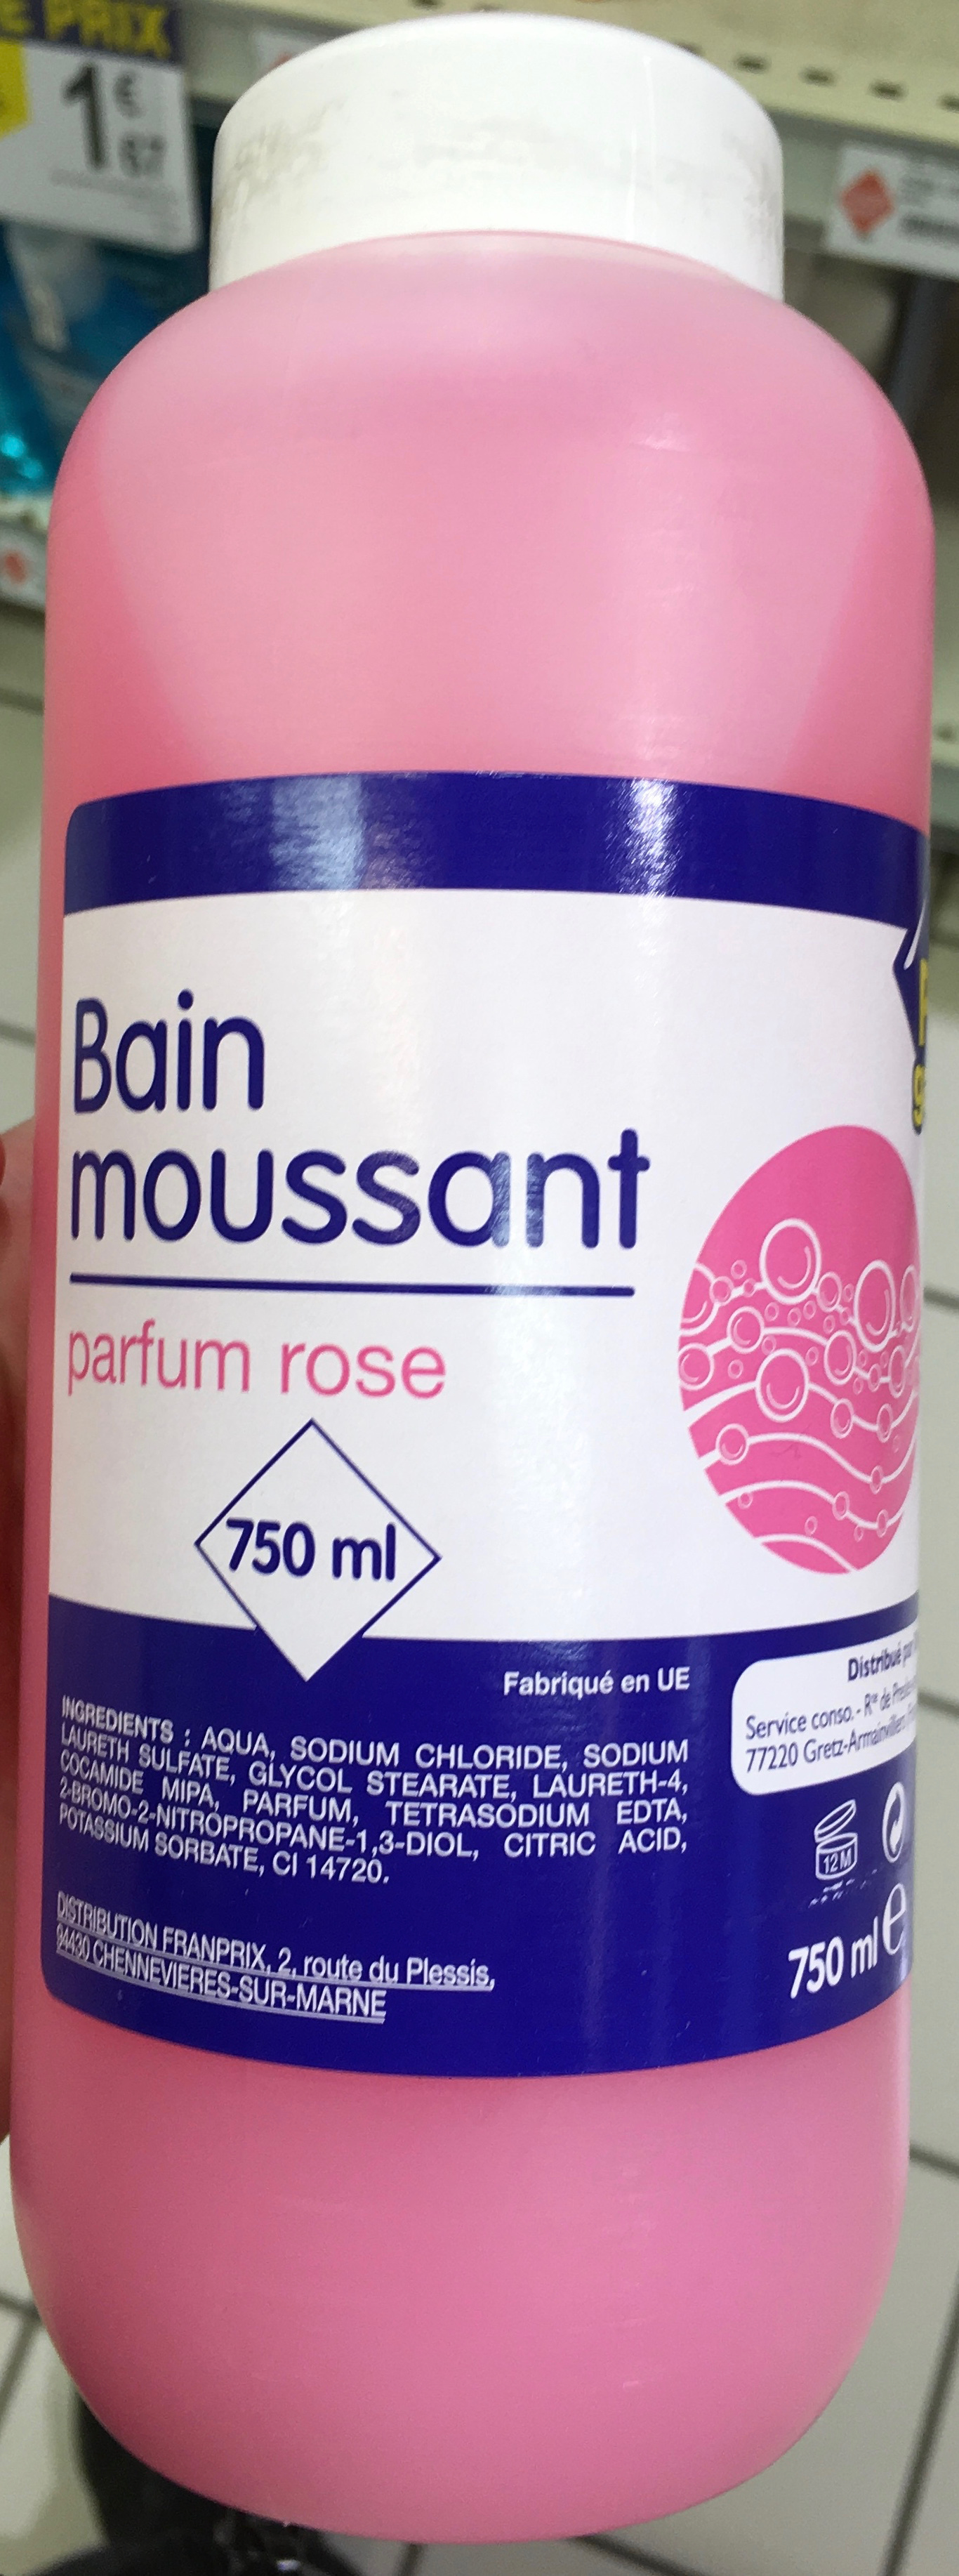 Bain moussant parfum rose - Produit - fr